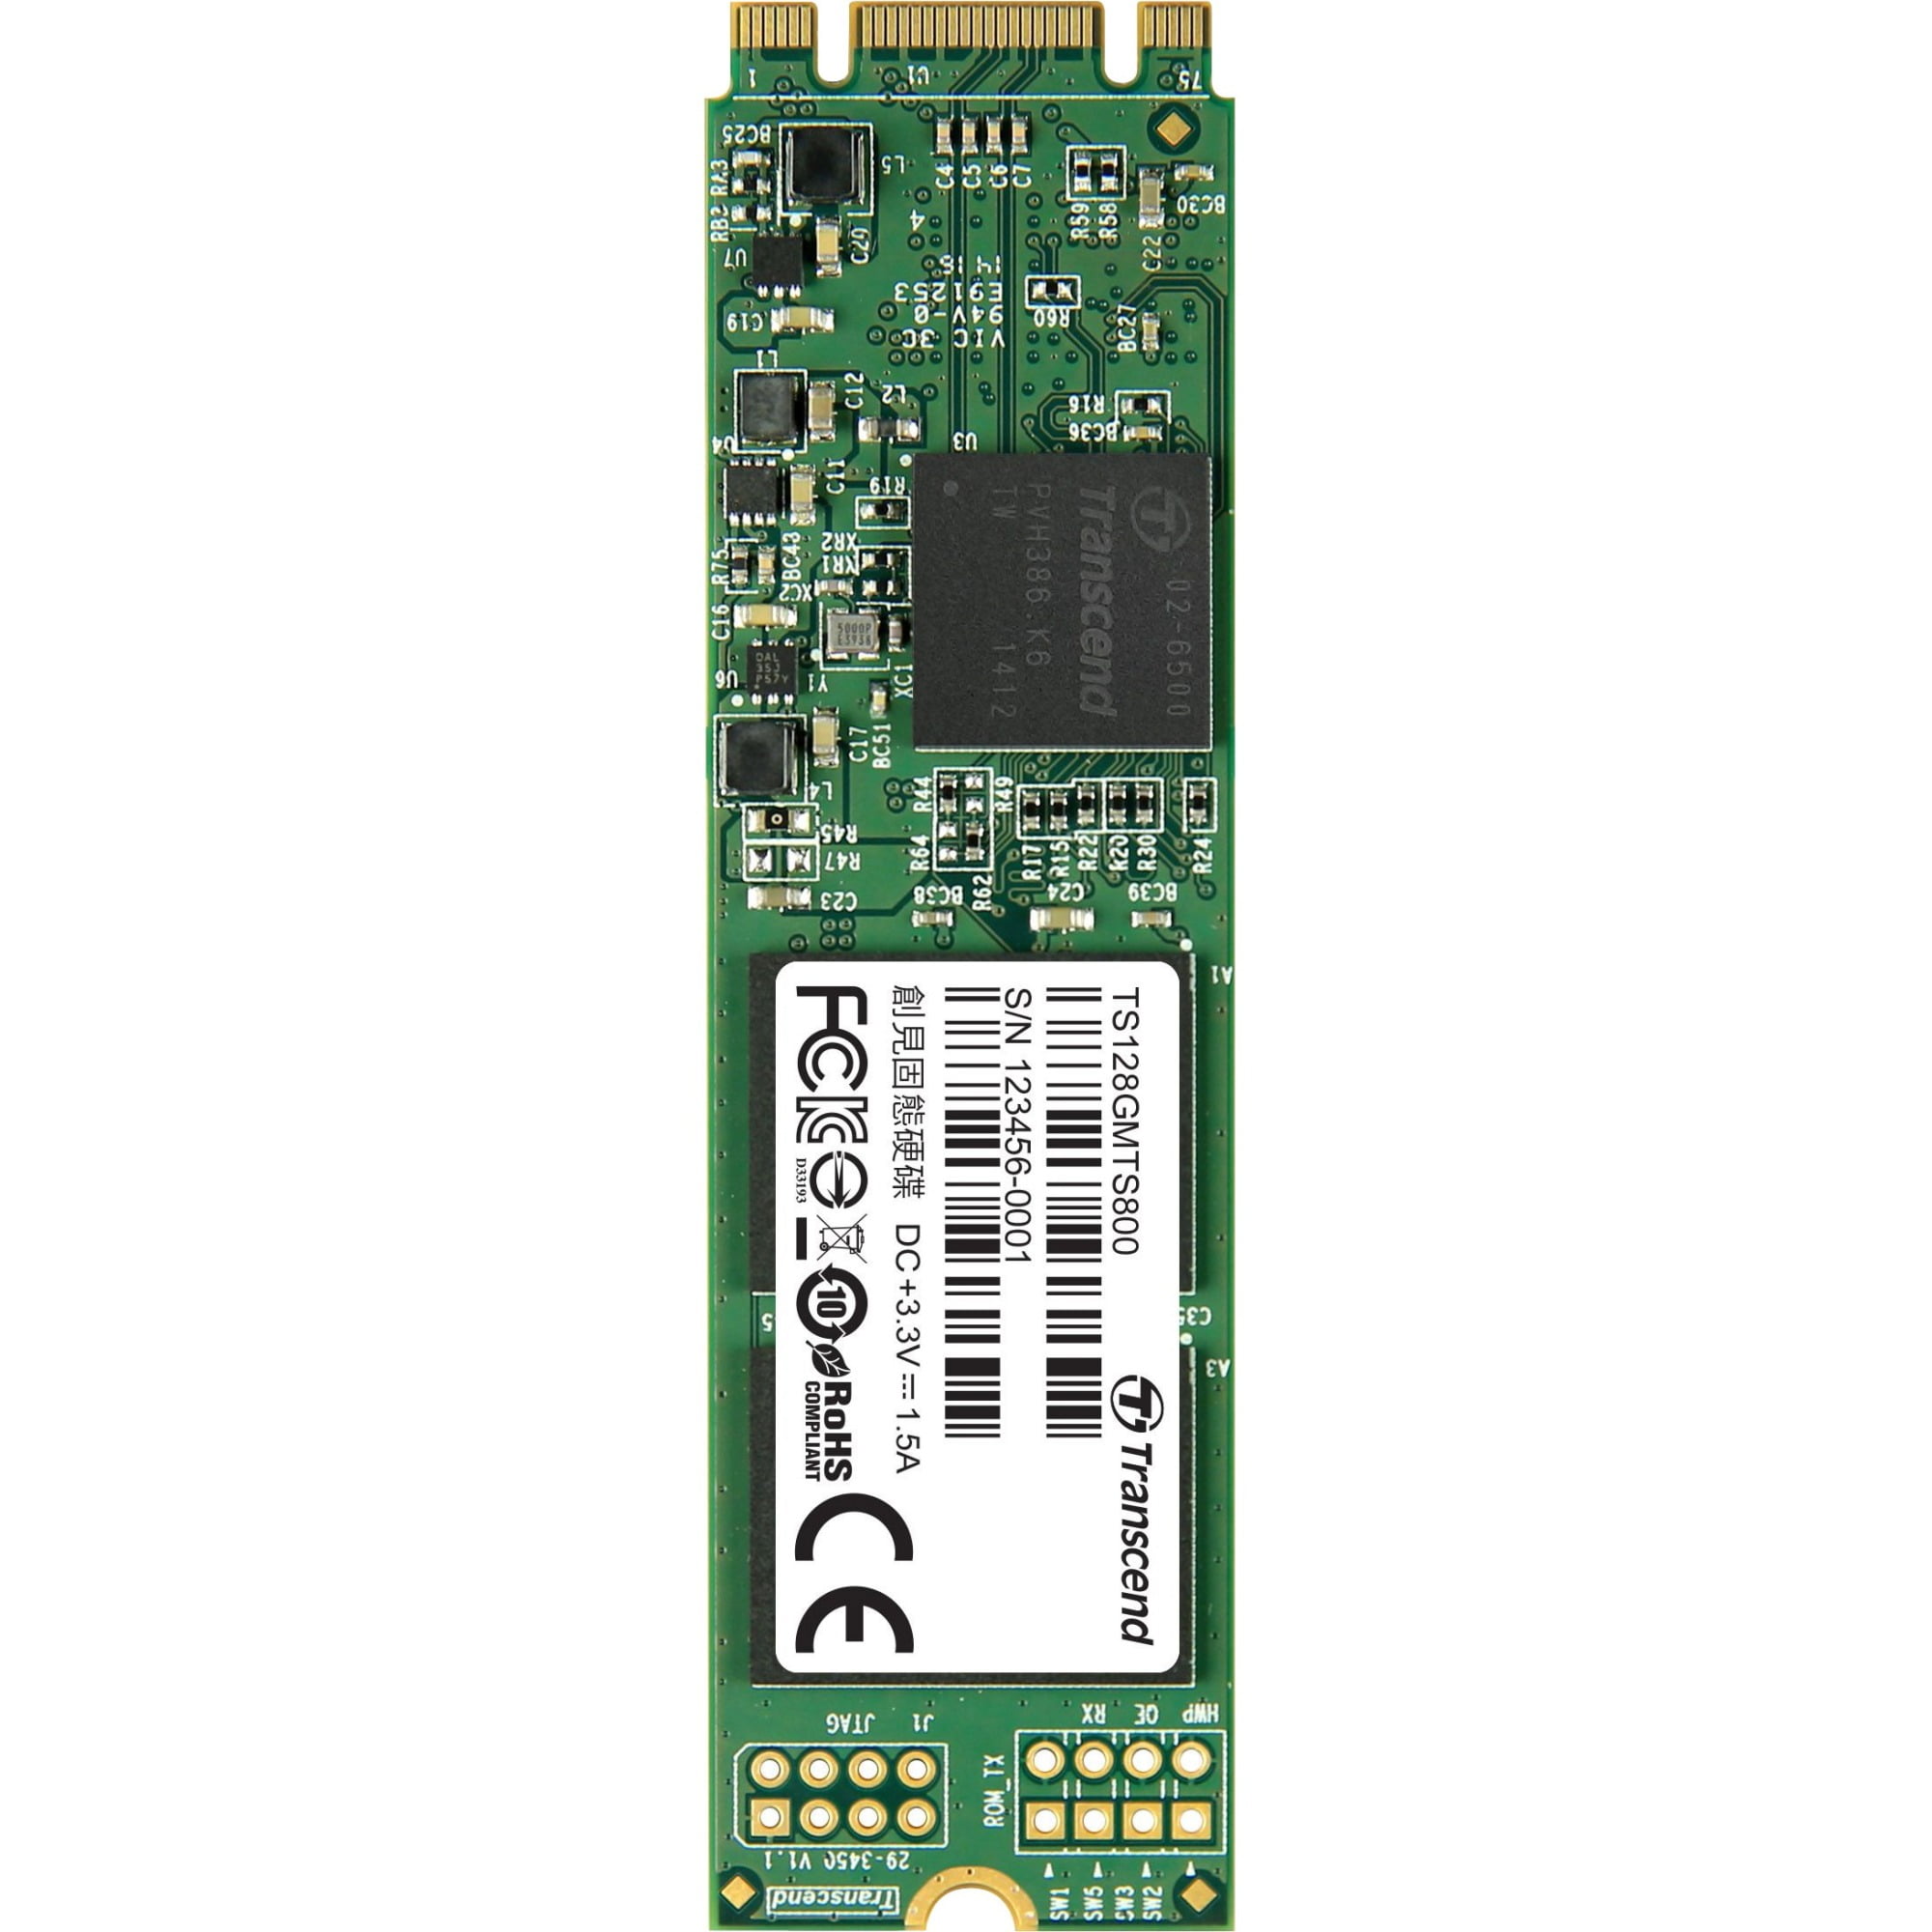 128GB TS128GMTS800 SSD SATA 3 M.2 2280 MLC Walmart.com